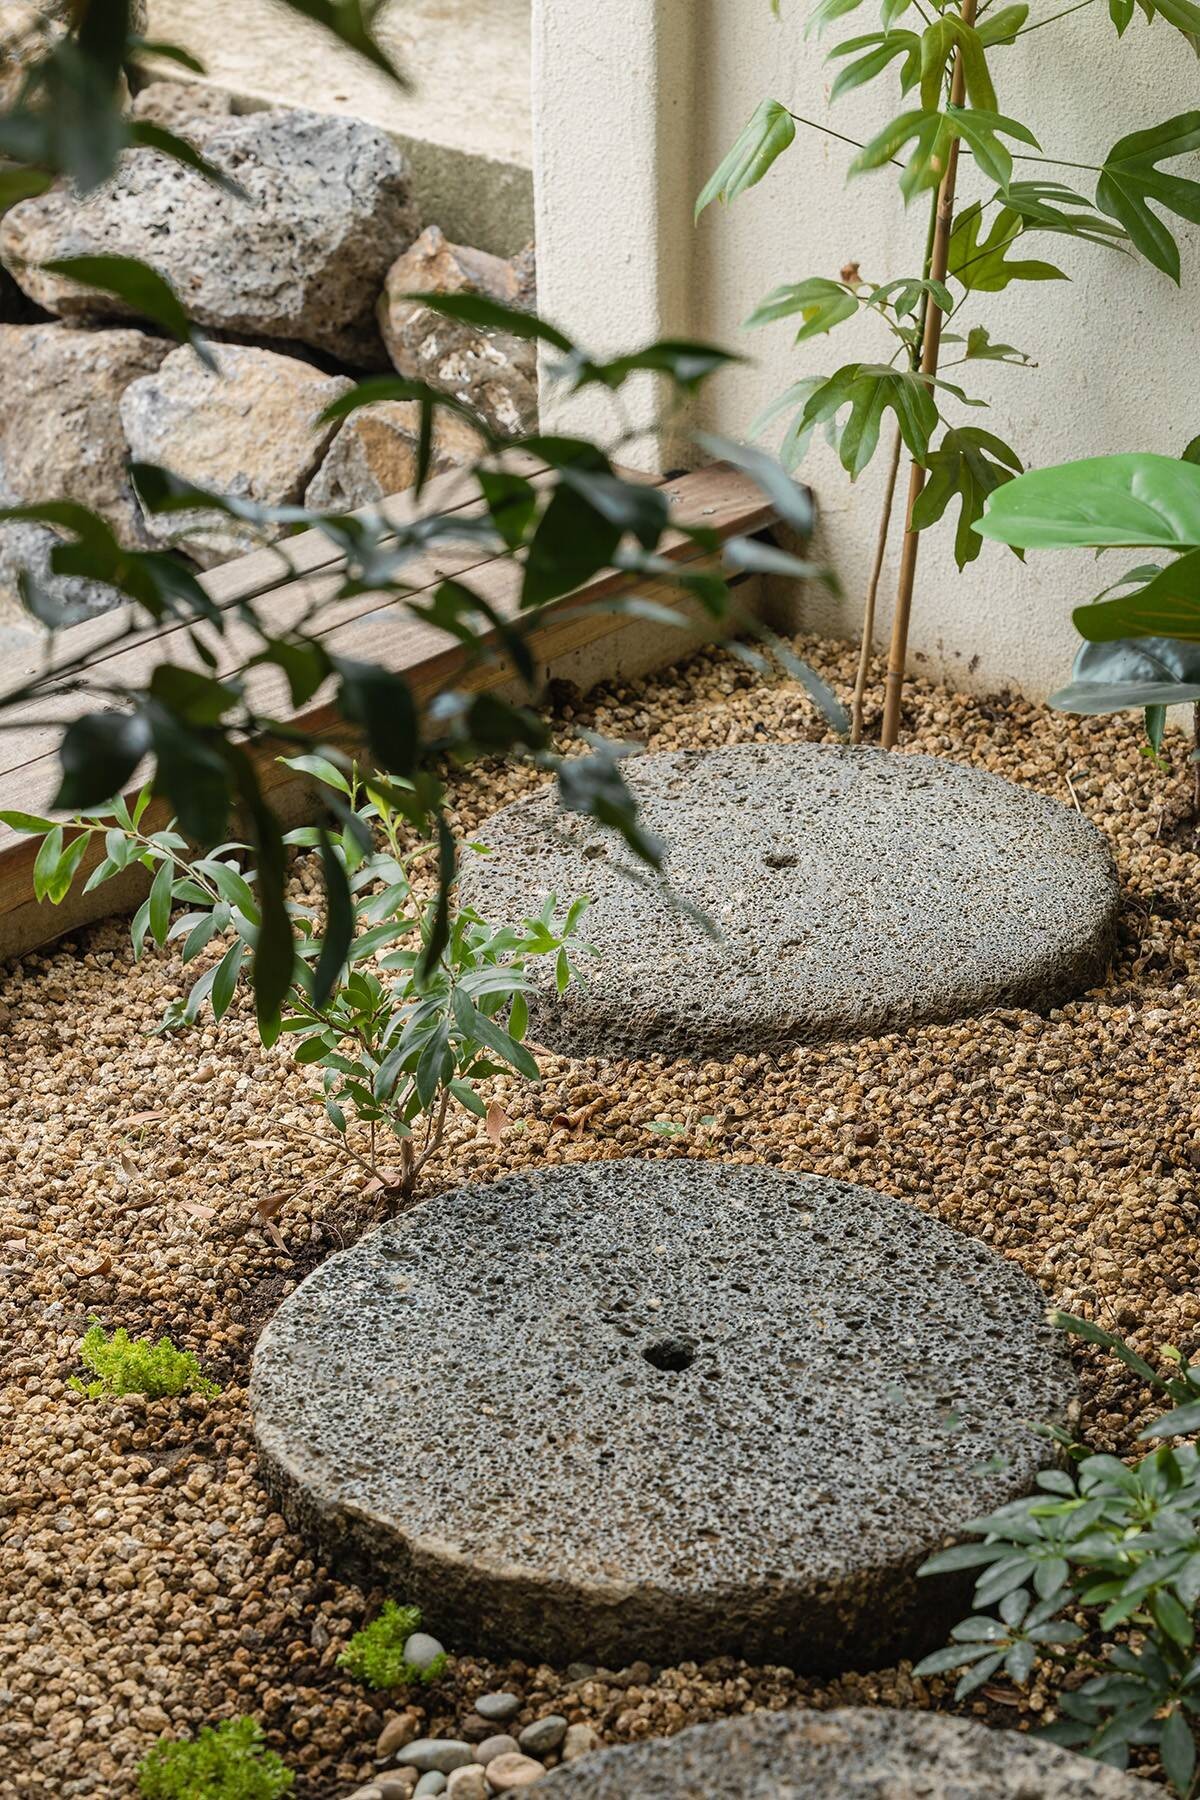 
Lối đi vào ấn tượng với những viên đá tròn, ở khu vườn trải sỏi đá
